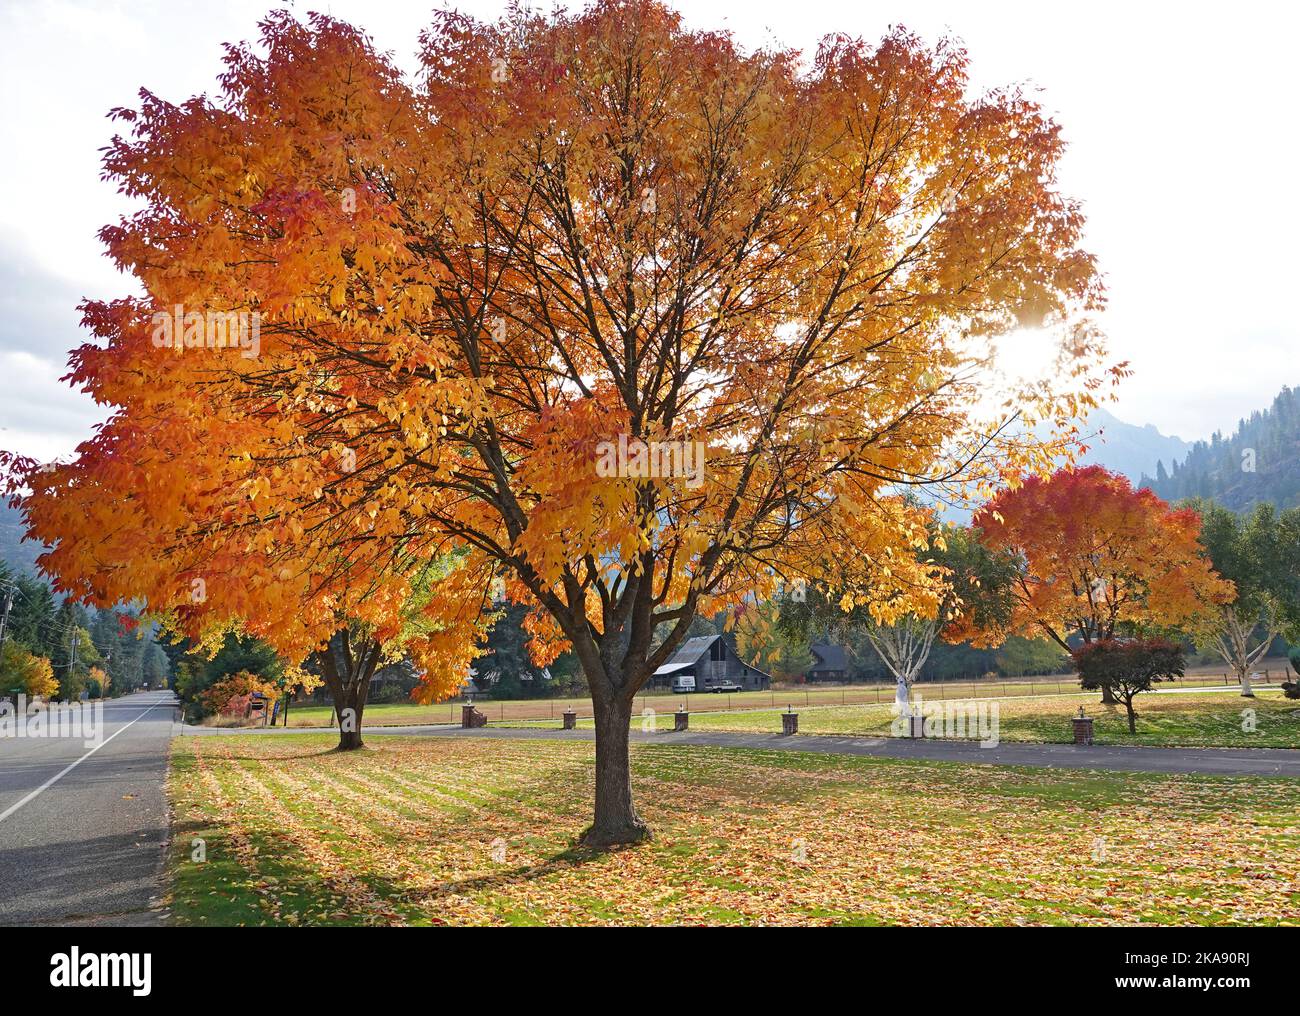 Los árboles de arce cambian de color en octubre en el pequeño pueblo de montaña de Leavenworth, Washington. Foto de stock